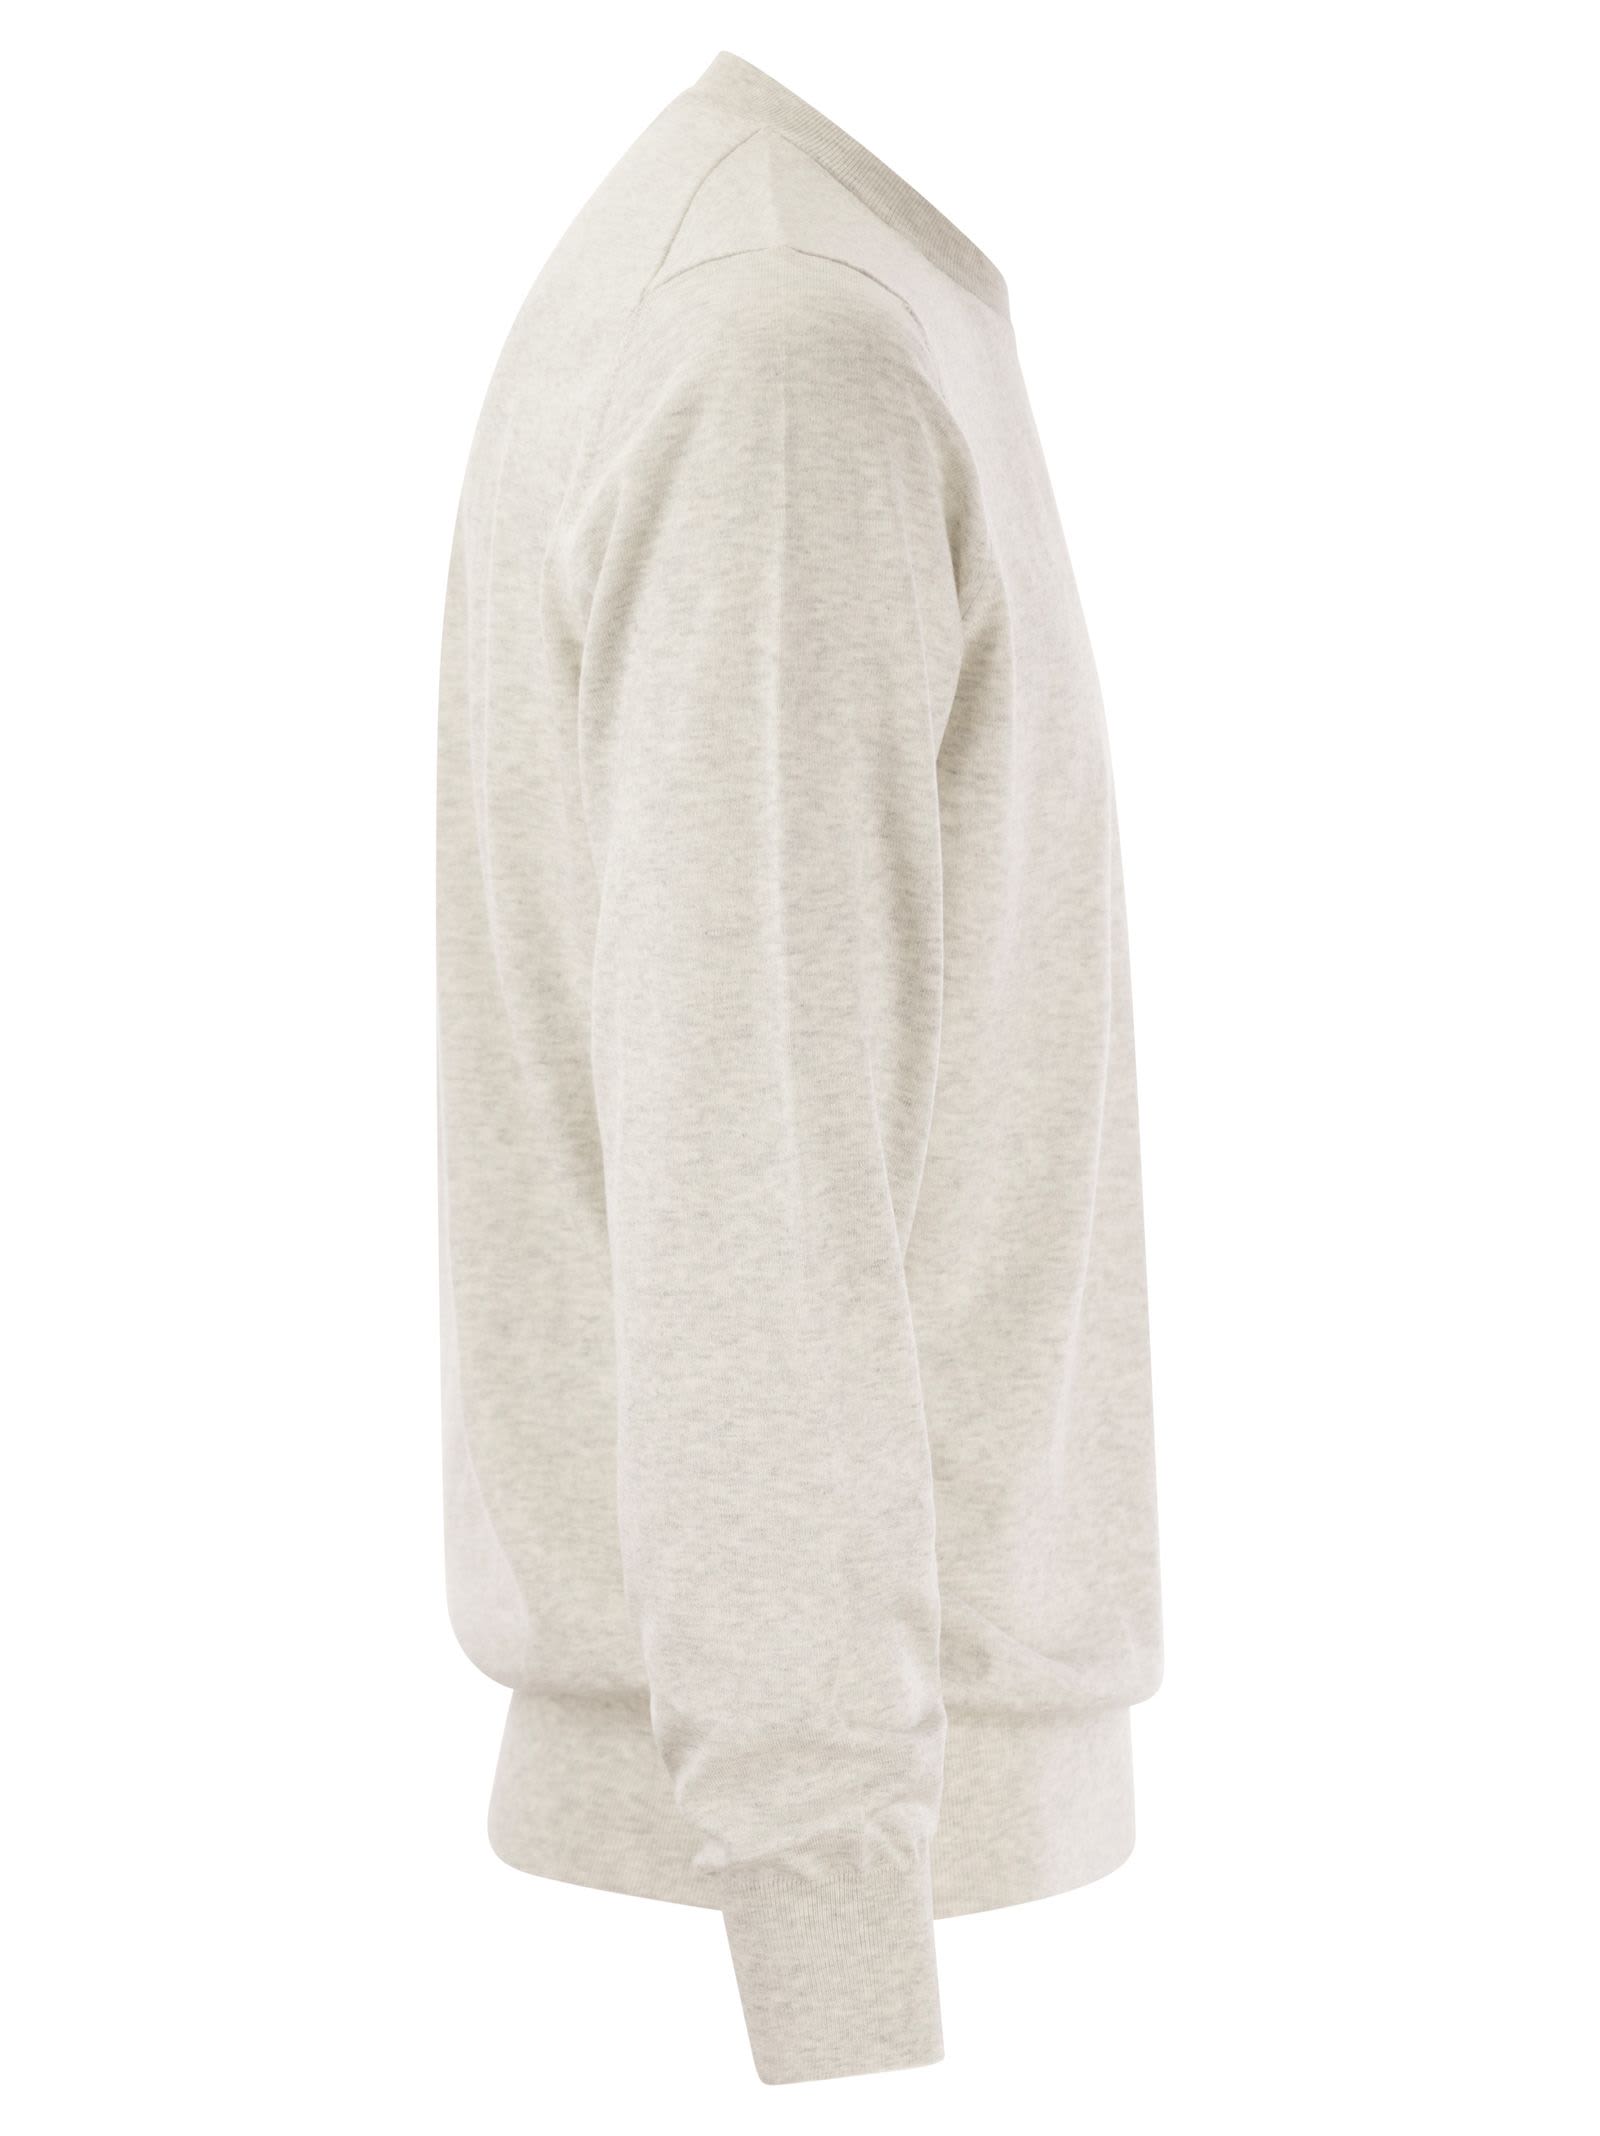 Shop Brunello Cucinelli Lightweight Cotton Jersey In Light Grey